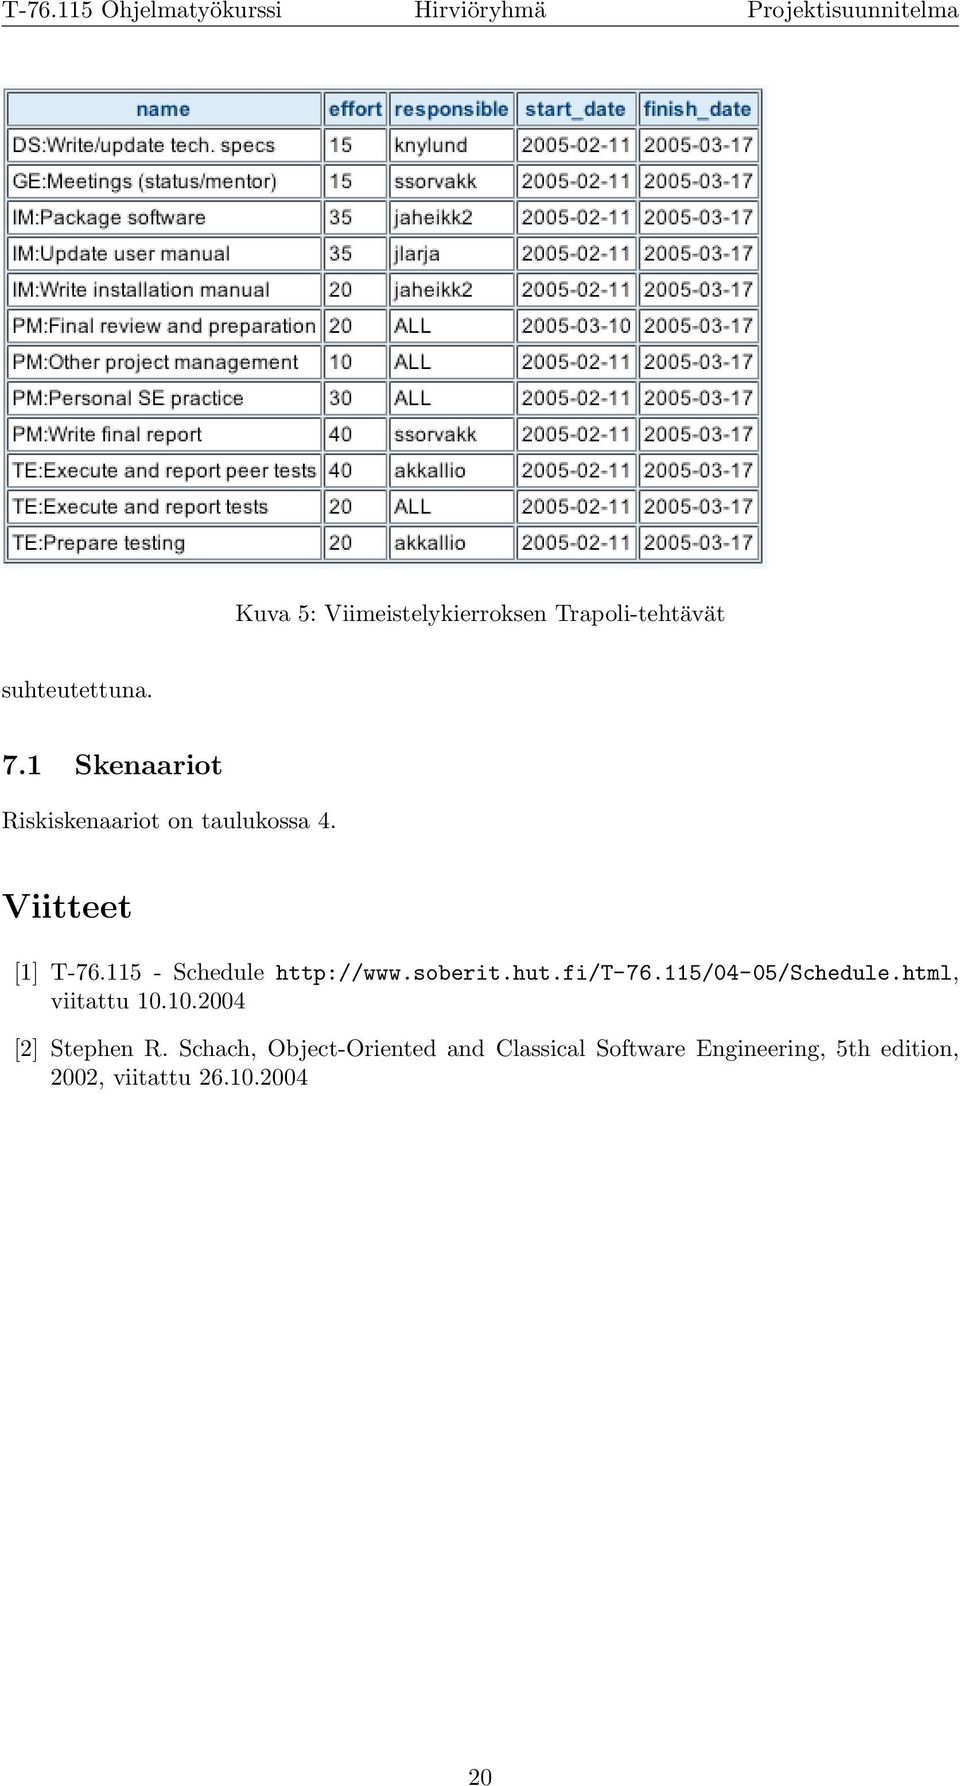 115 - Schedule http://www.soberit.hut.fi/t-76.115/04-05/schedule.html, viitattu 10.